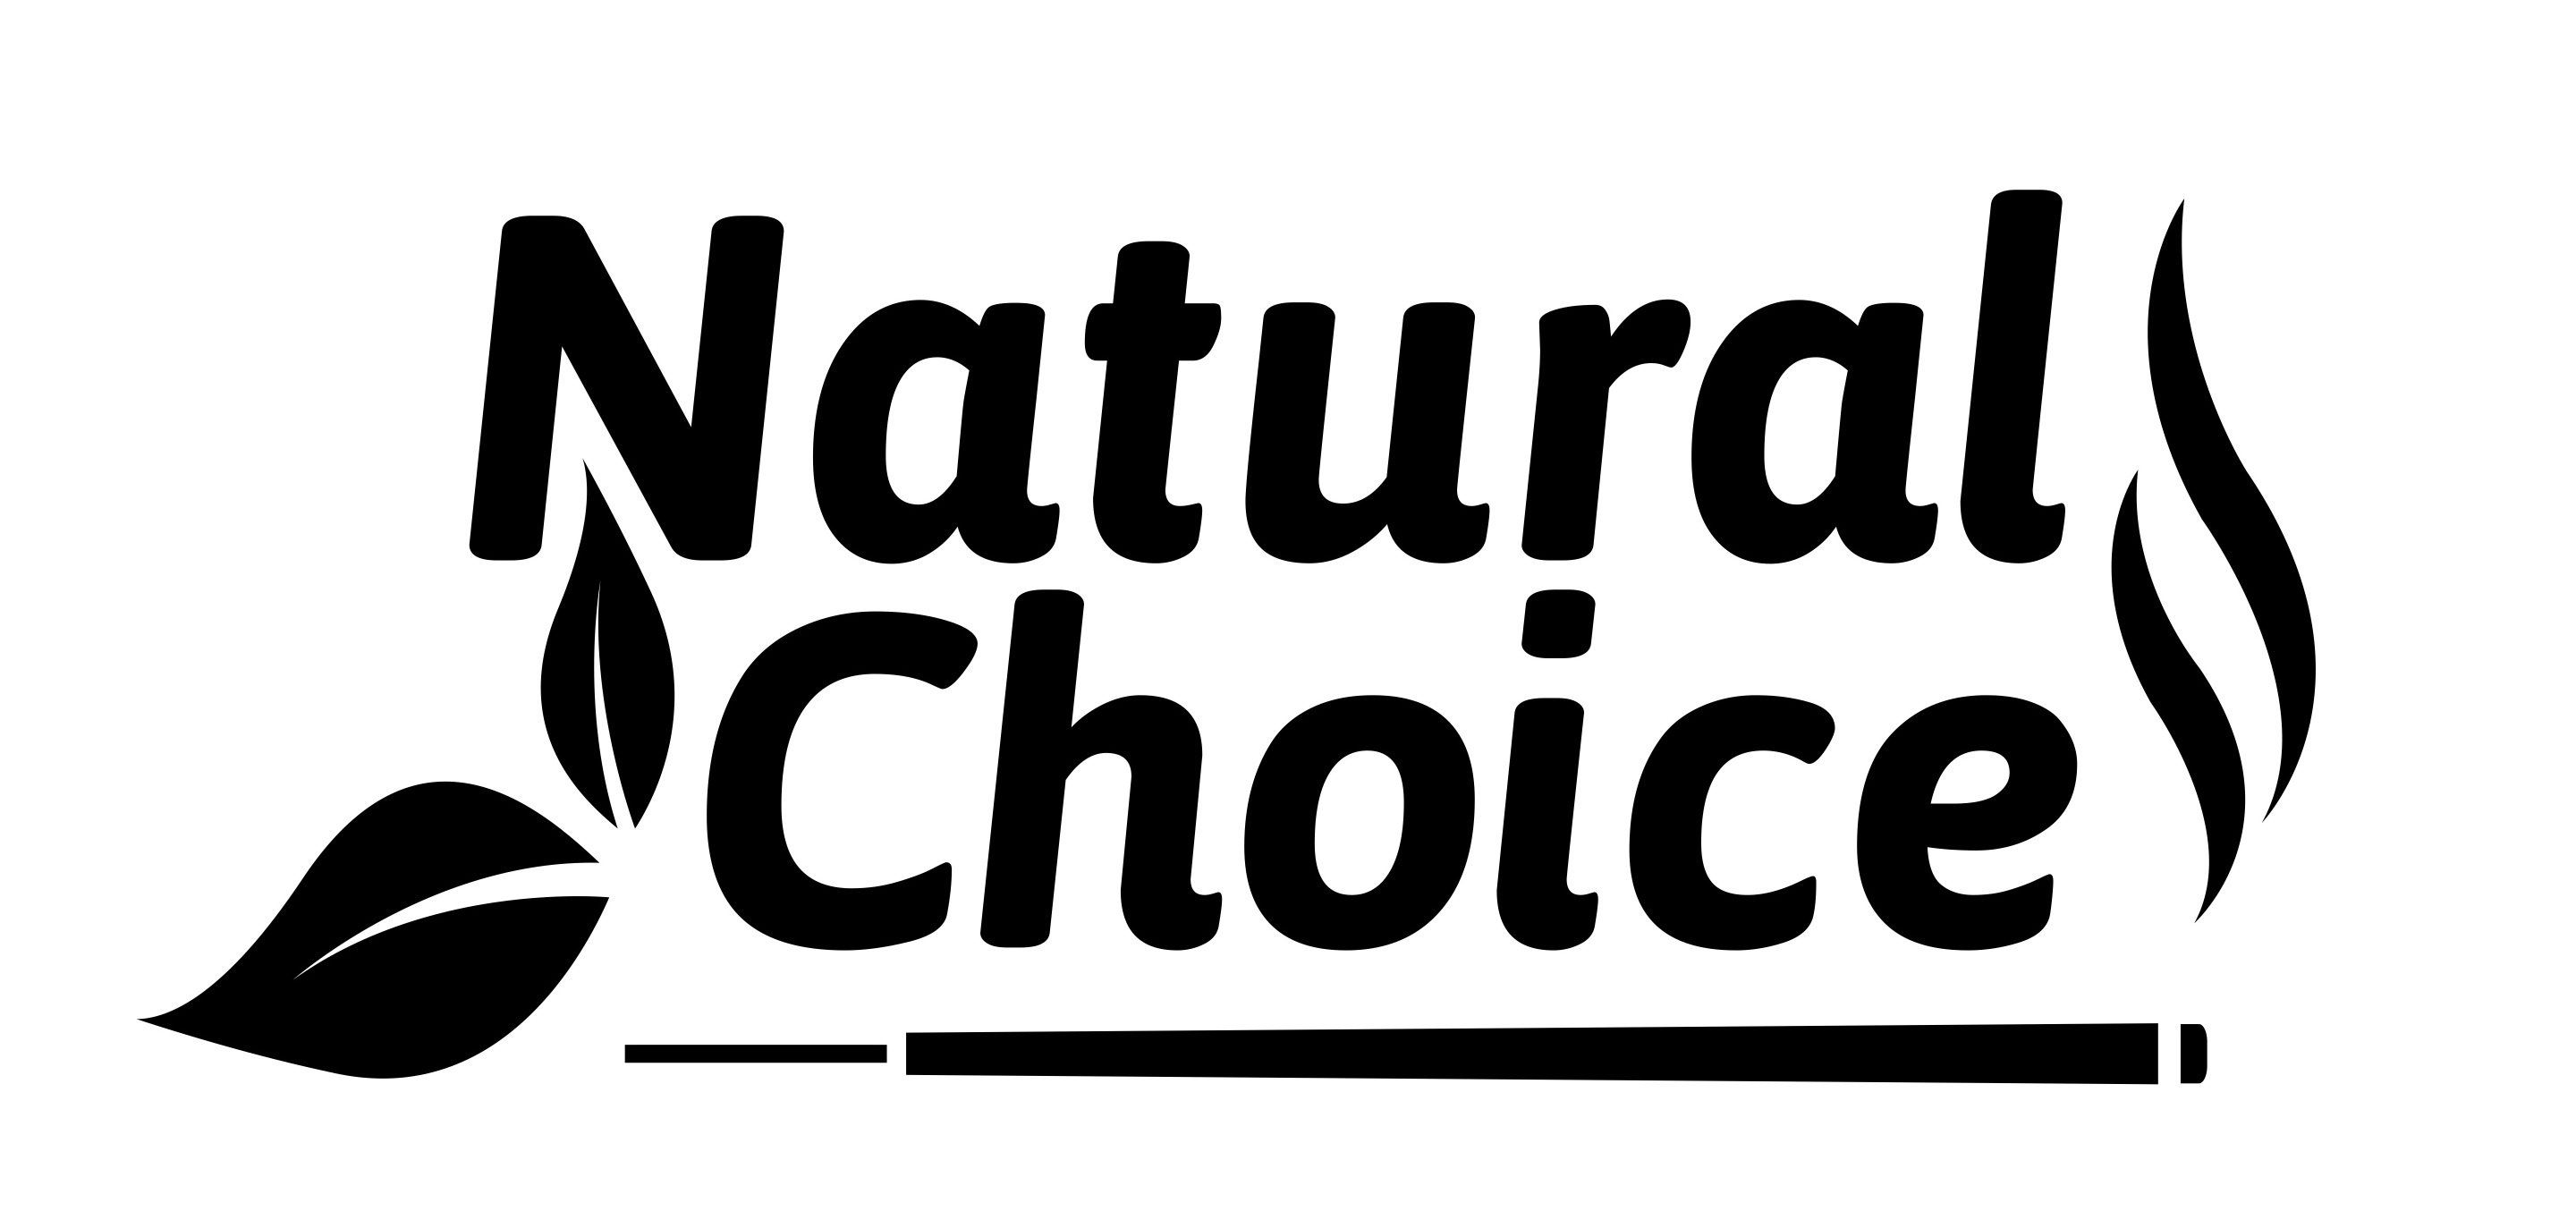 Trademark Logo NATURAL CHOICE